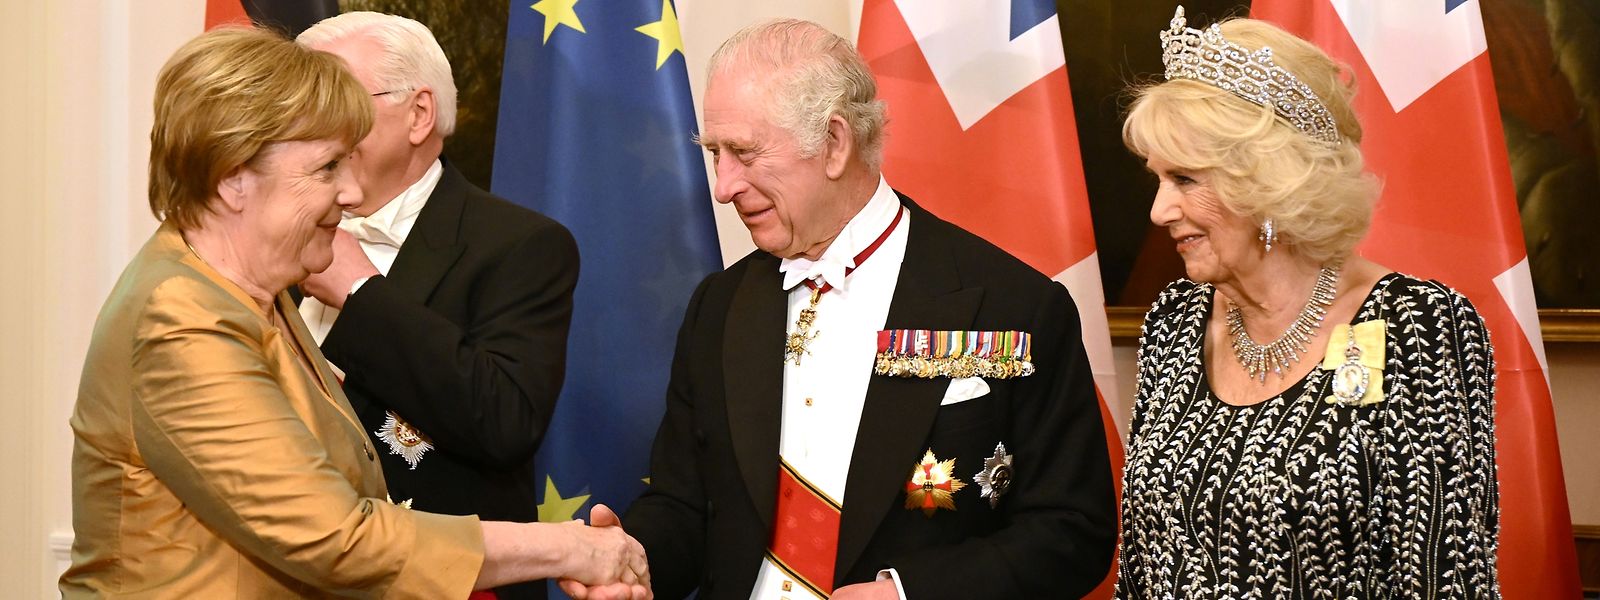 Freundschaftlicher Handschlag: König Charles III. begrüßt die ehemalige Bundeskanzlerin Angela Merkel.